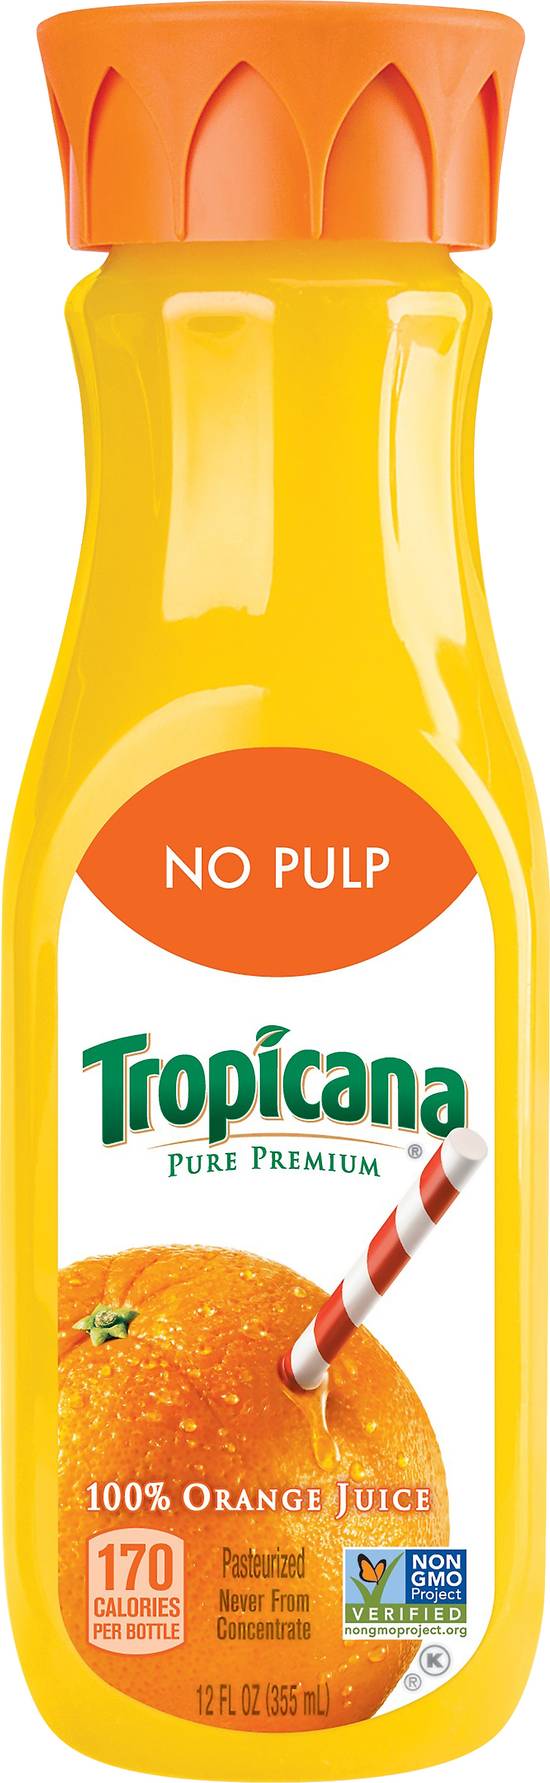 Tropicana No Pulp 100% Orange Juice (12 fl oz)